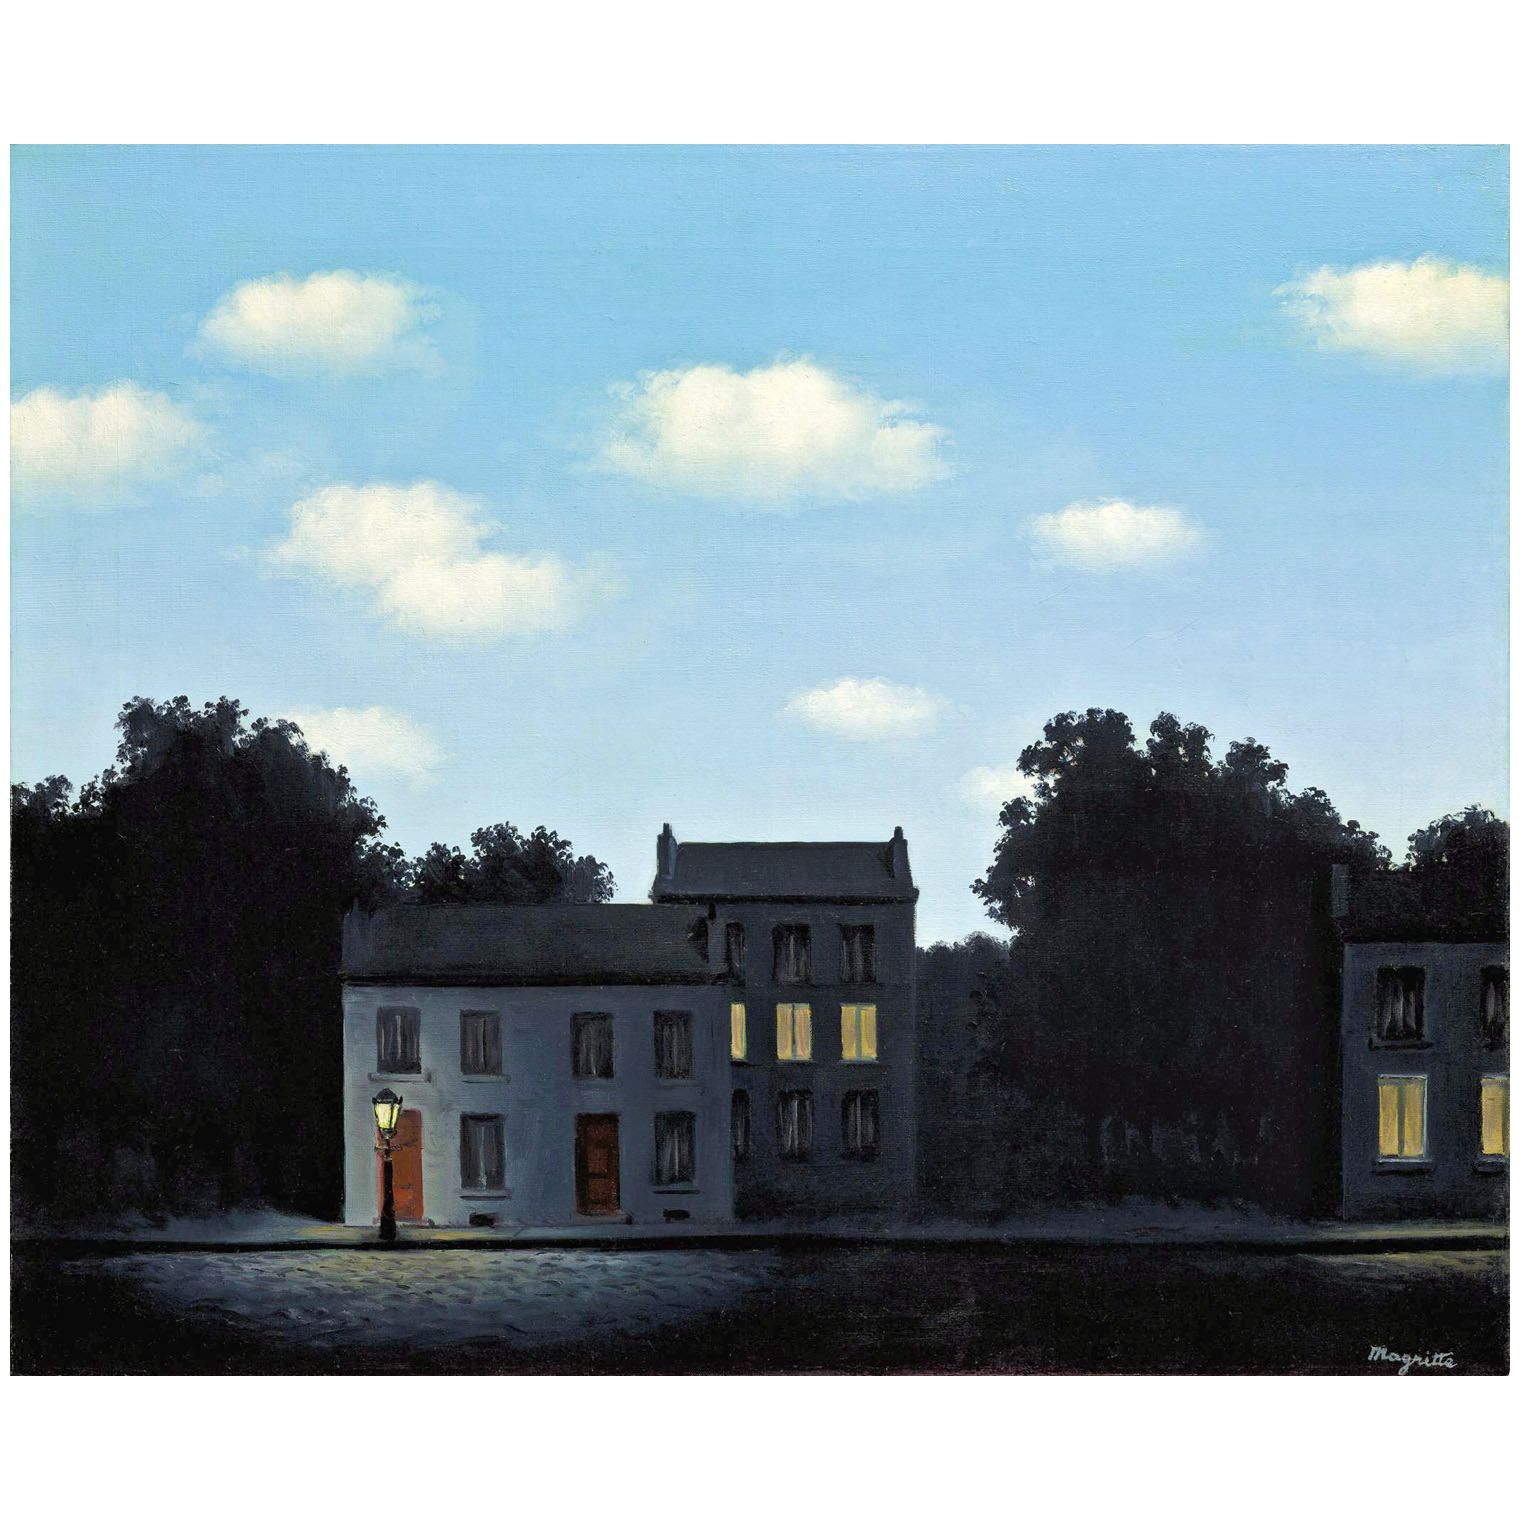 Rene Magritte. L’Empire des lumières. 1949. Private collection